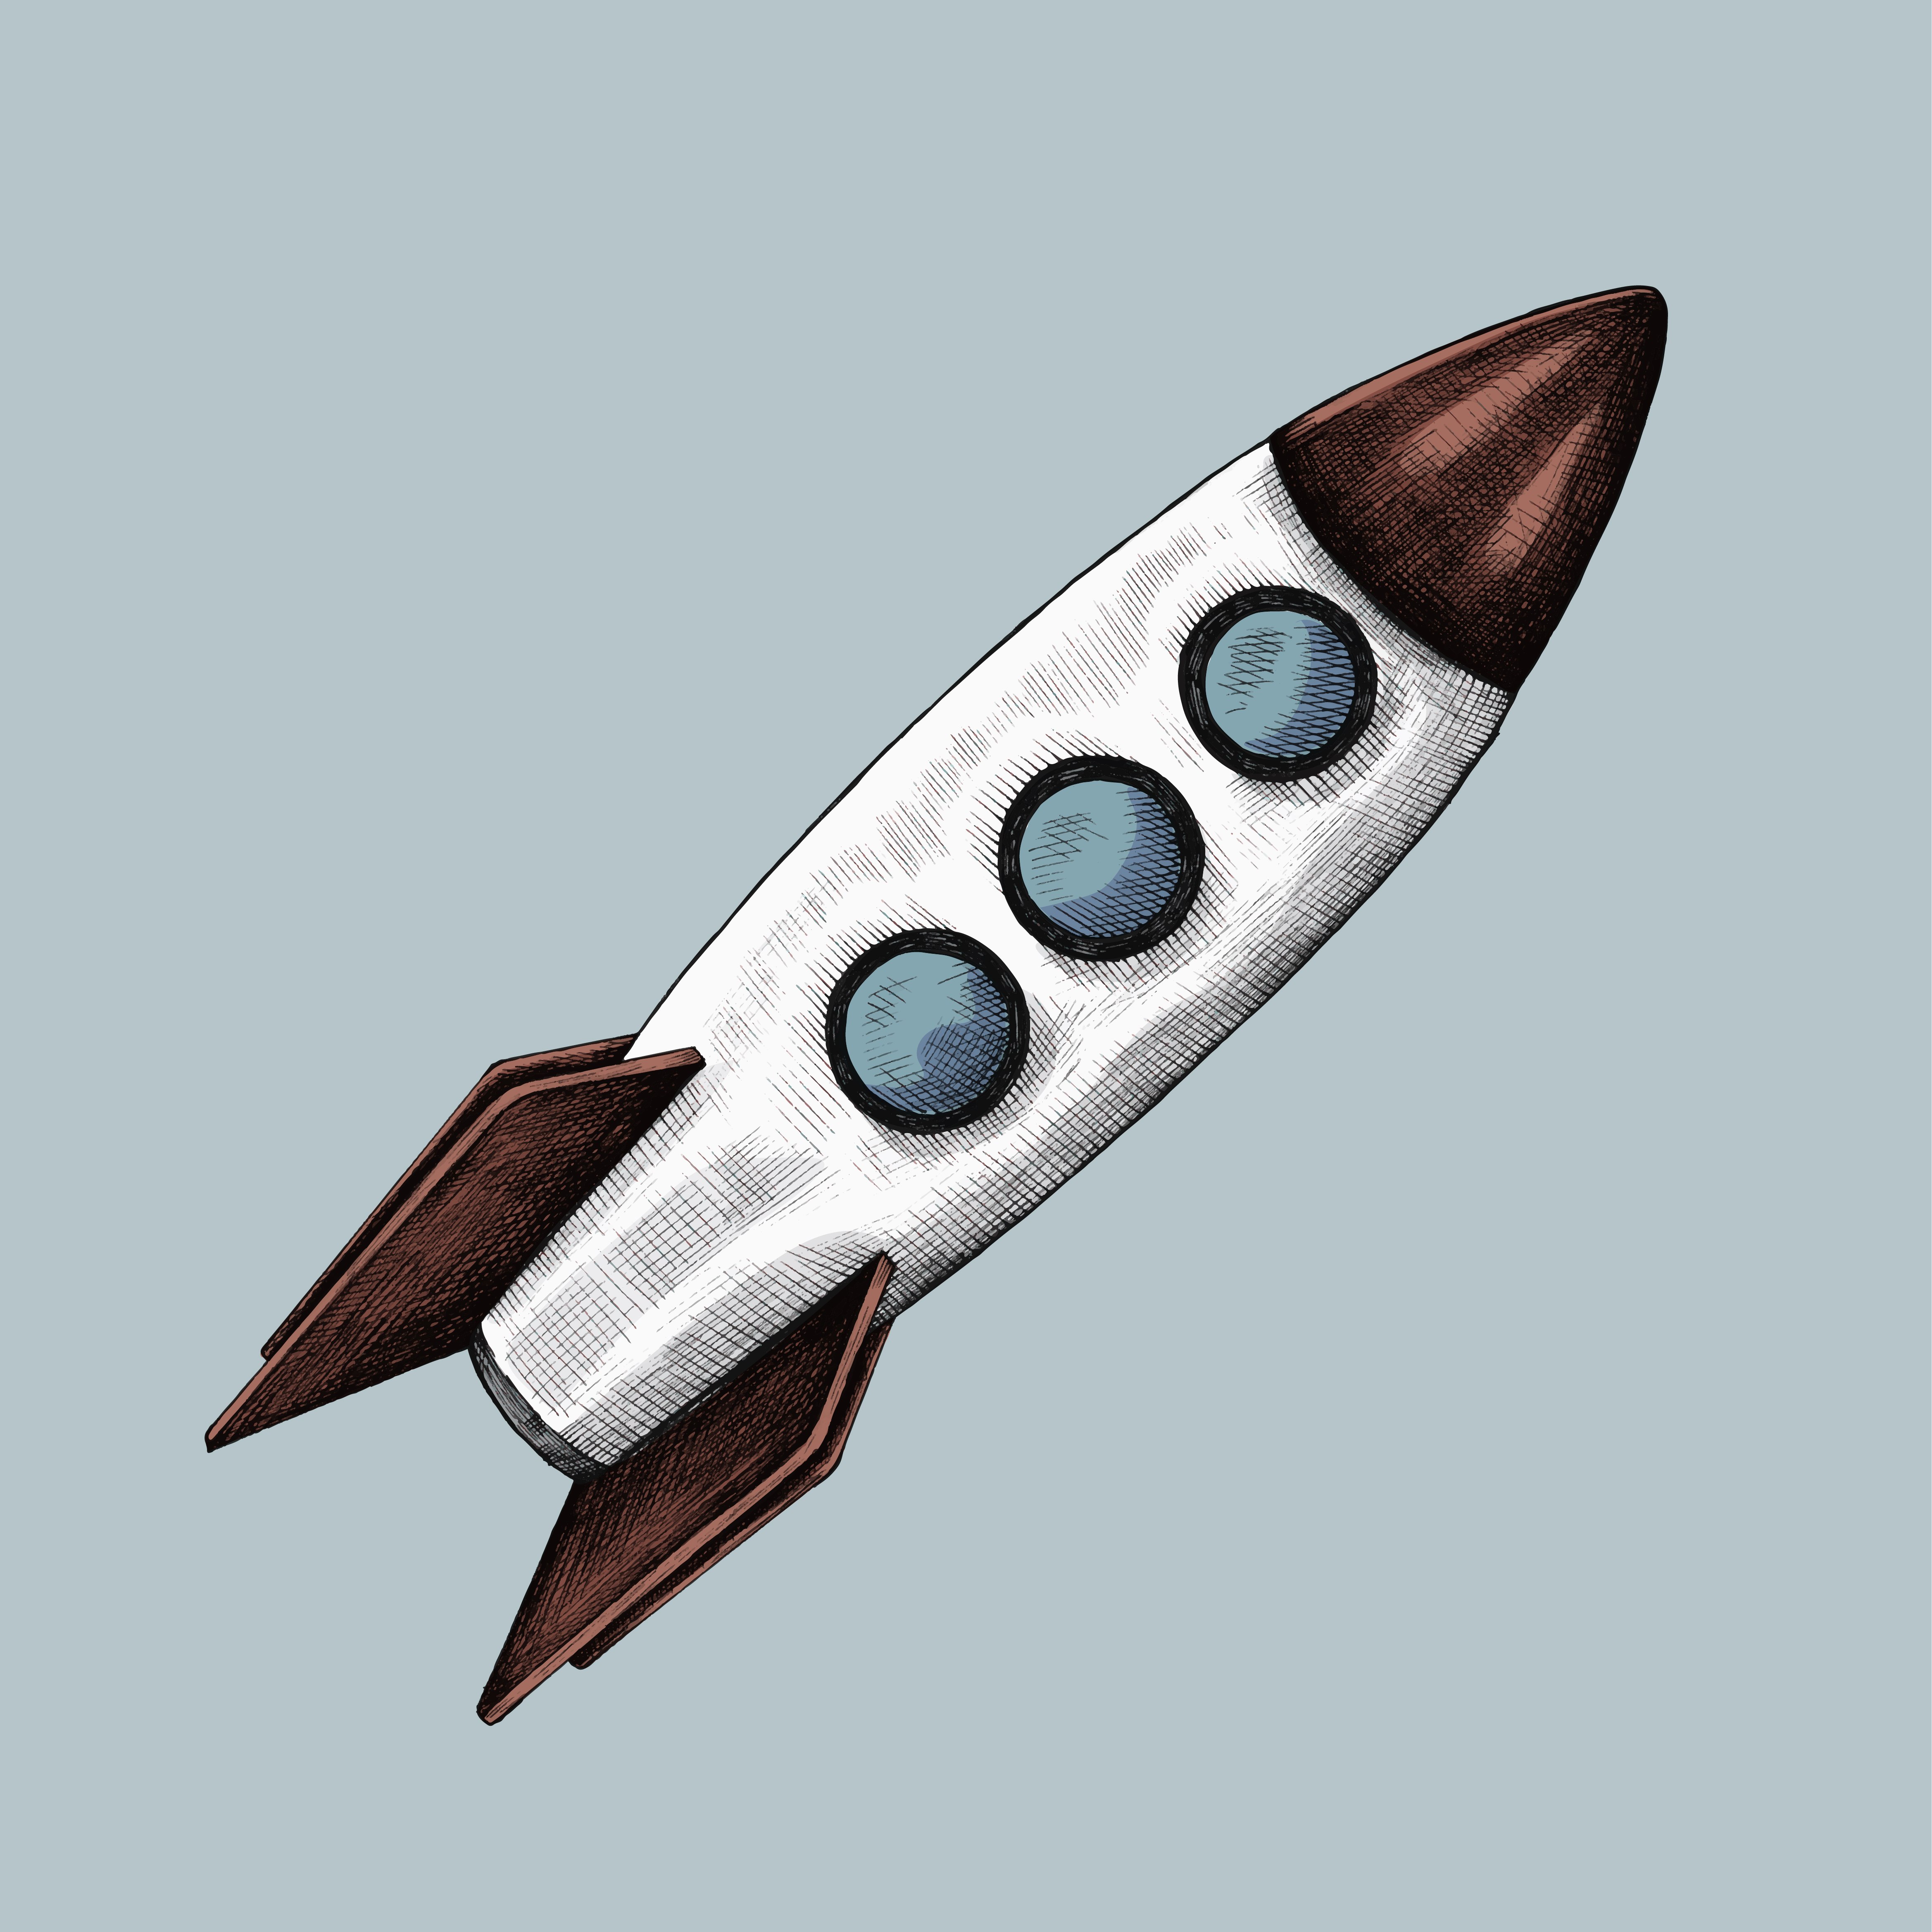 Картинки ракеты для детей дошкольного возраста. Нарисовать ракету. Ракета эскиз. Ракета иллюстрация. Ракета реалистичная.